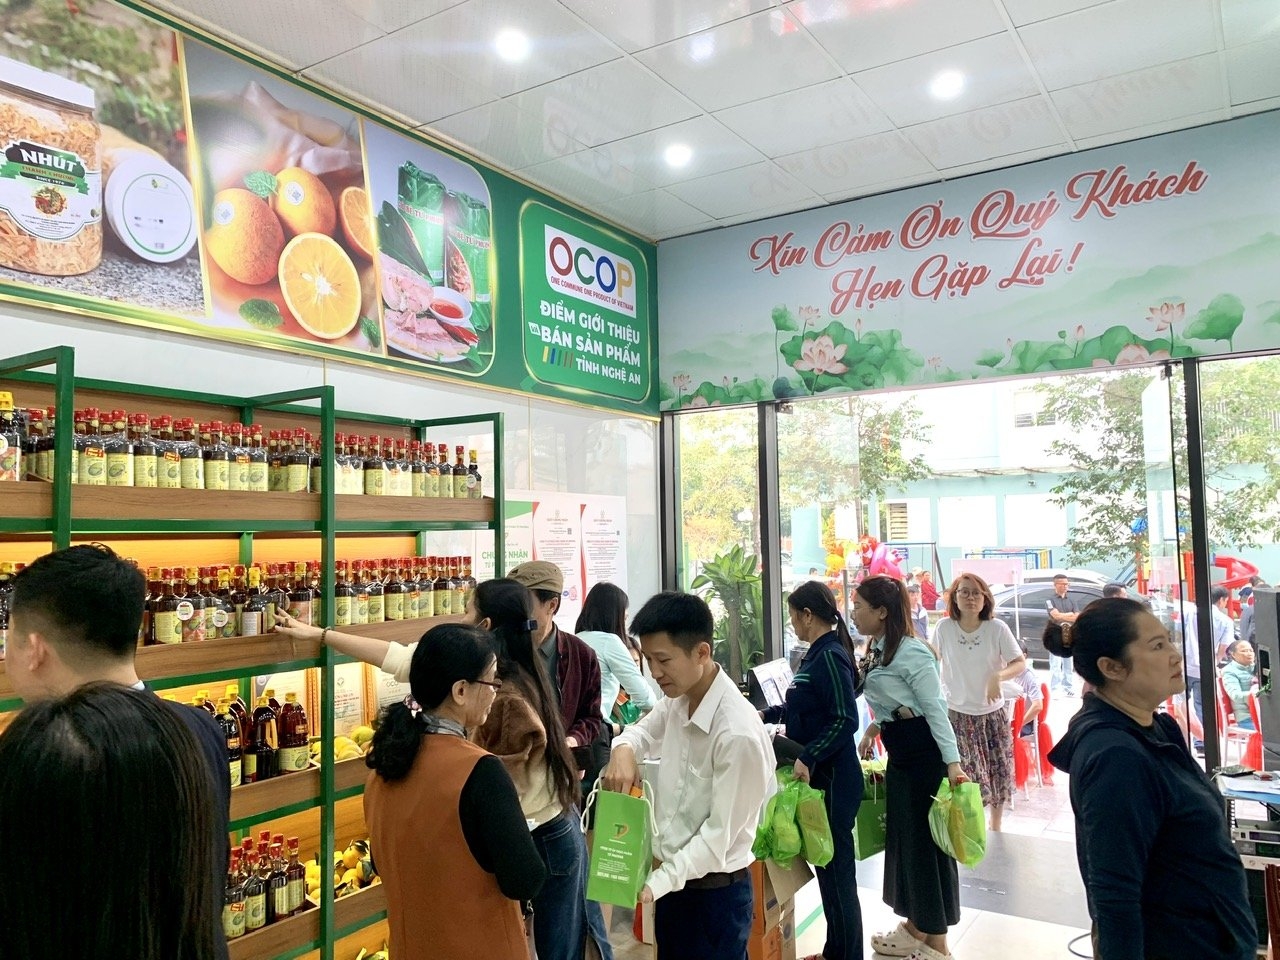 Khai trương điểm giới thiệu sản phẩm OCOP tỉnh Nghệ An tại Hà Nội